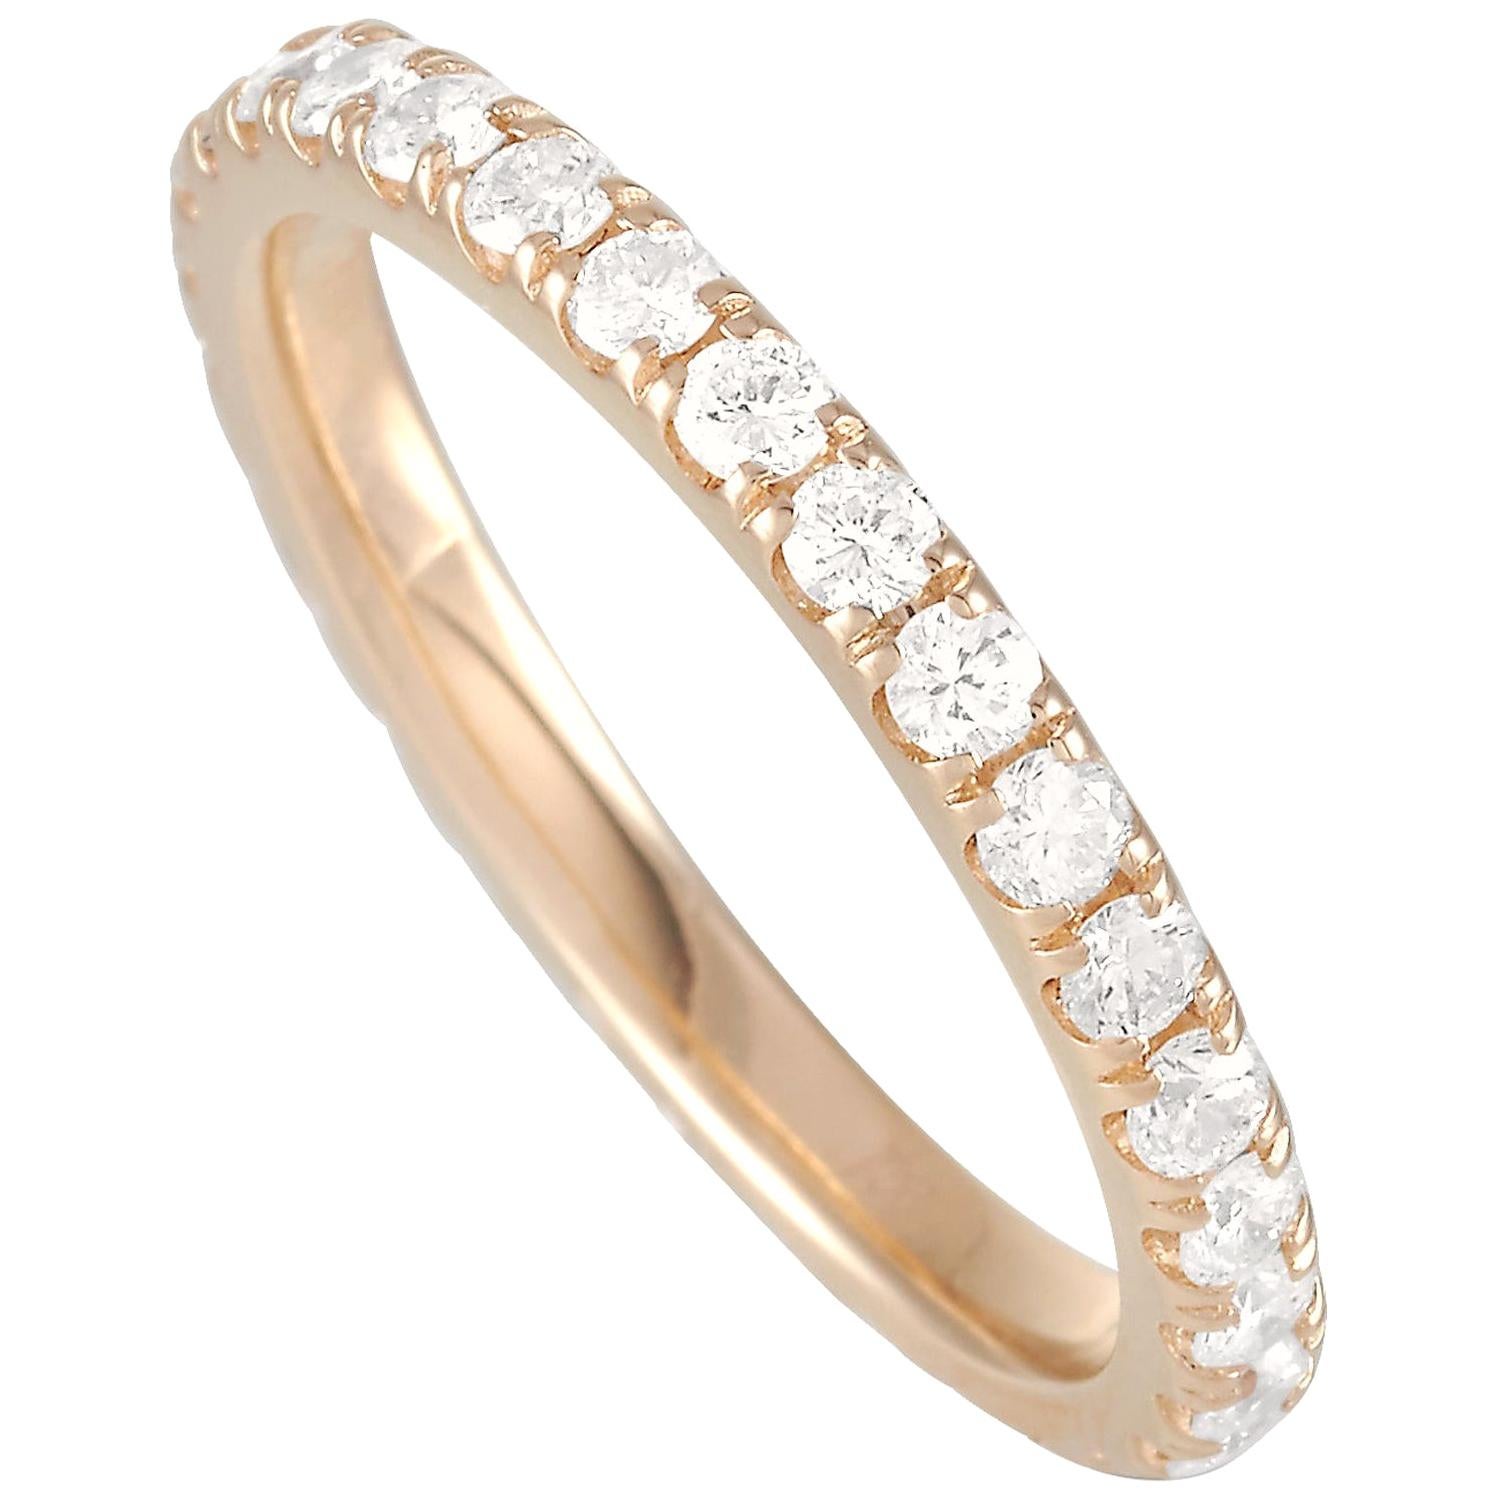 LB Exclusive 14 Karat Yellow Gold 1.03 Carat Diamond Ring